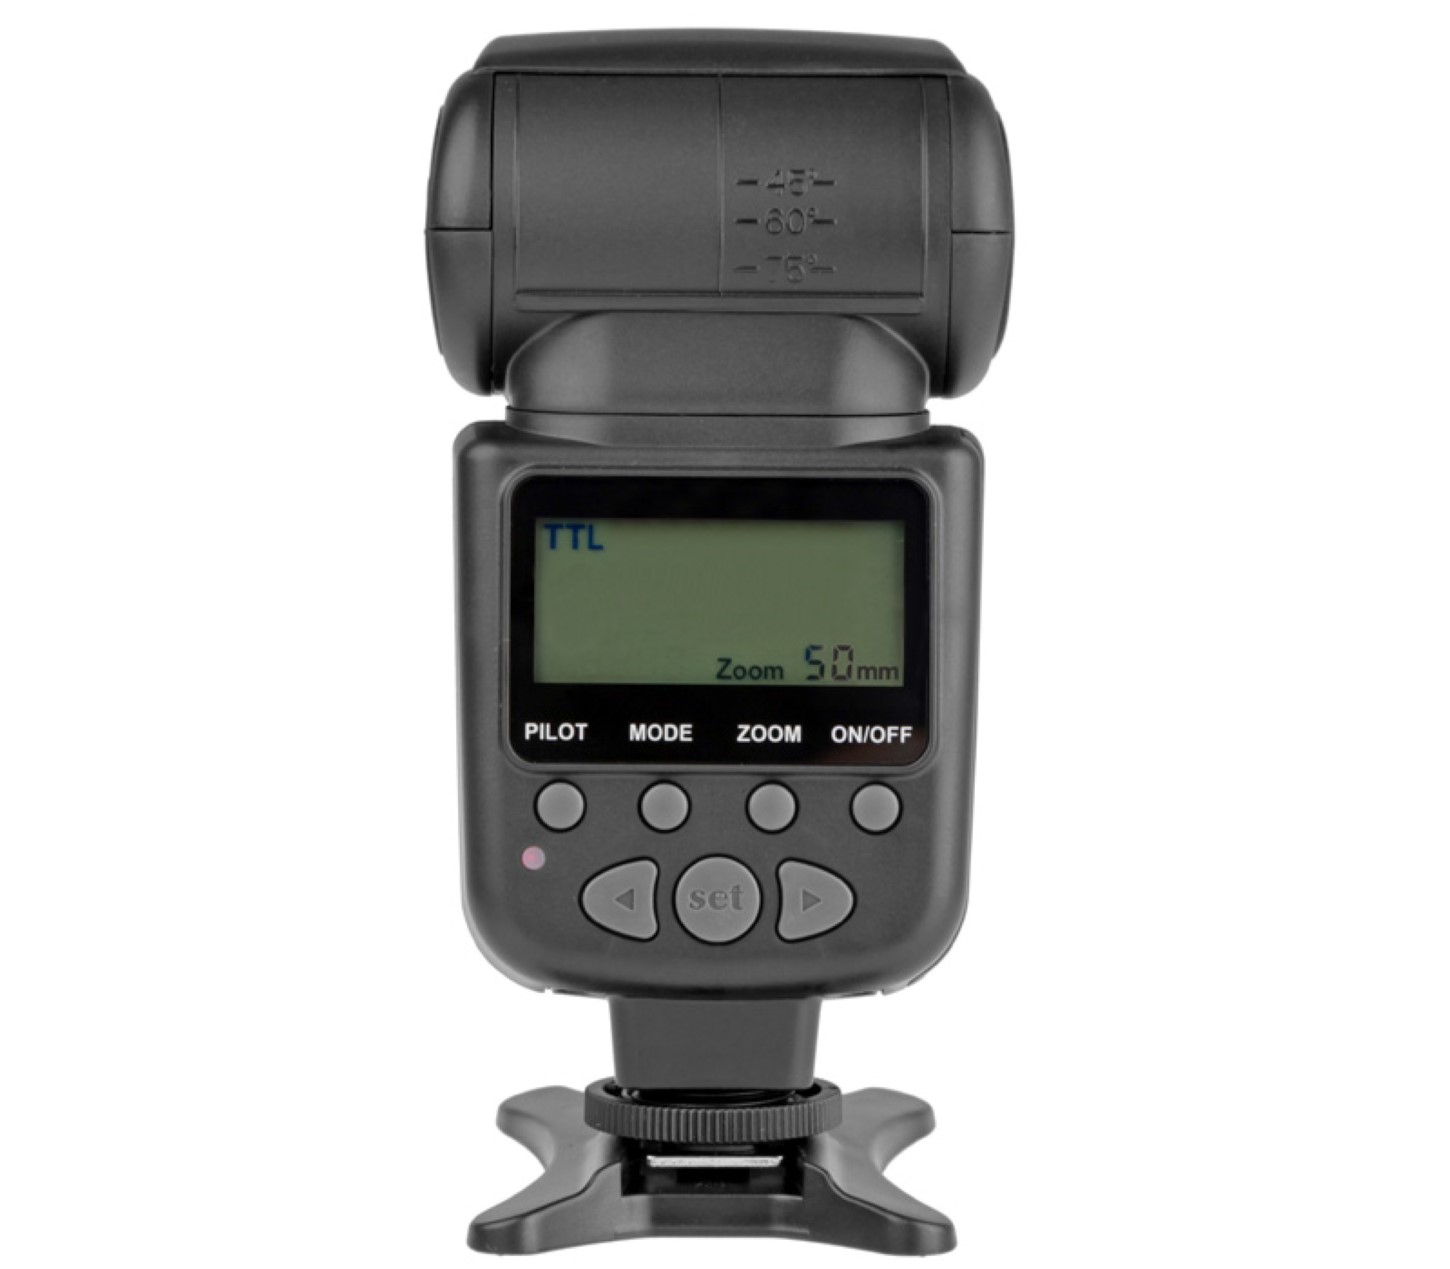 Meike TTL Speedlite Blitz MK950II für Canon EOS DSLR & SLR Kameras